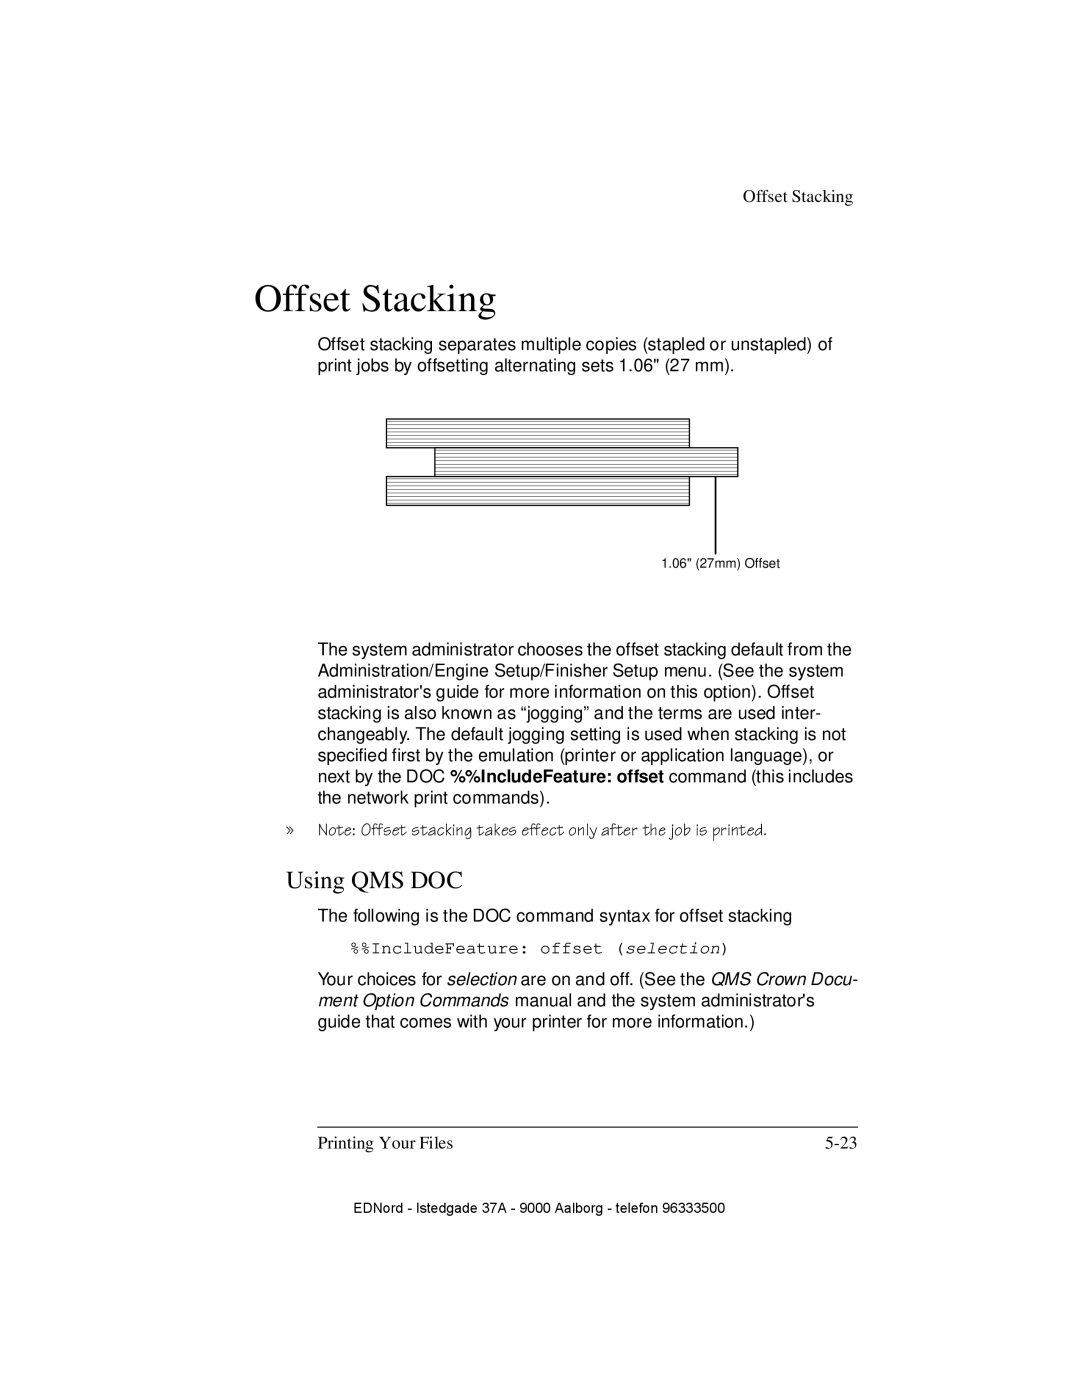 IBM QMS 4525 manual Offset Stacking, Using QMS DOC 